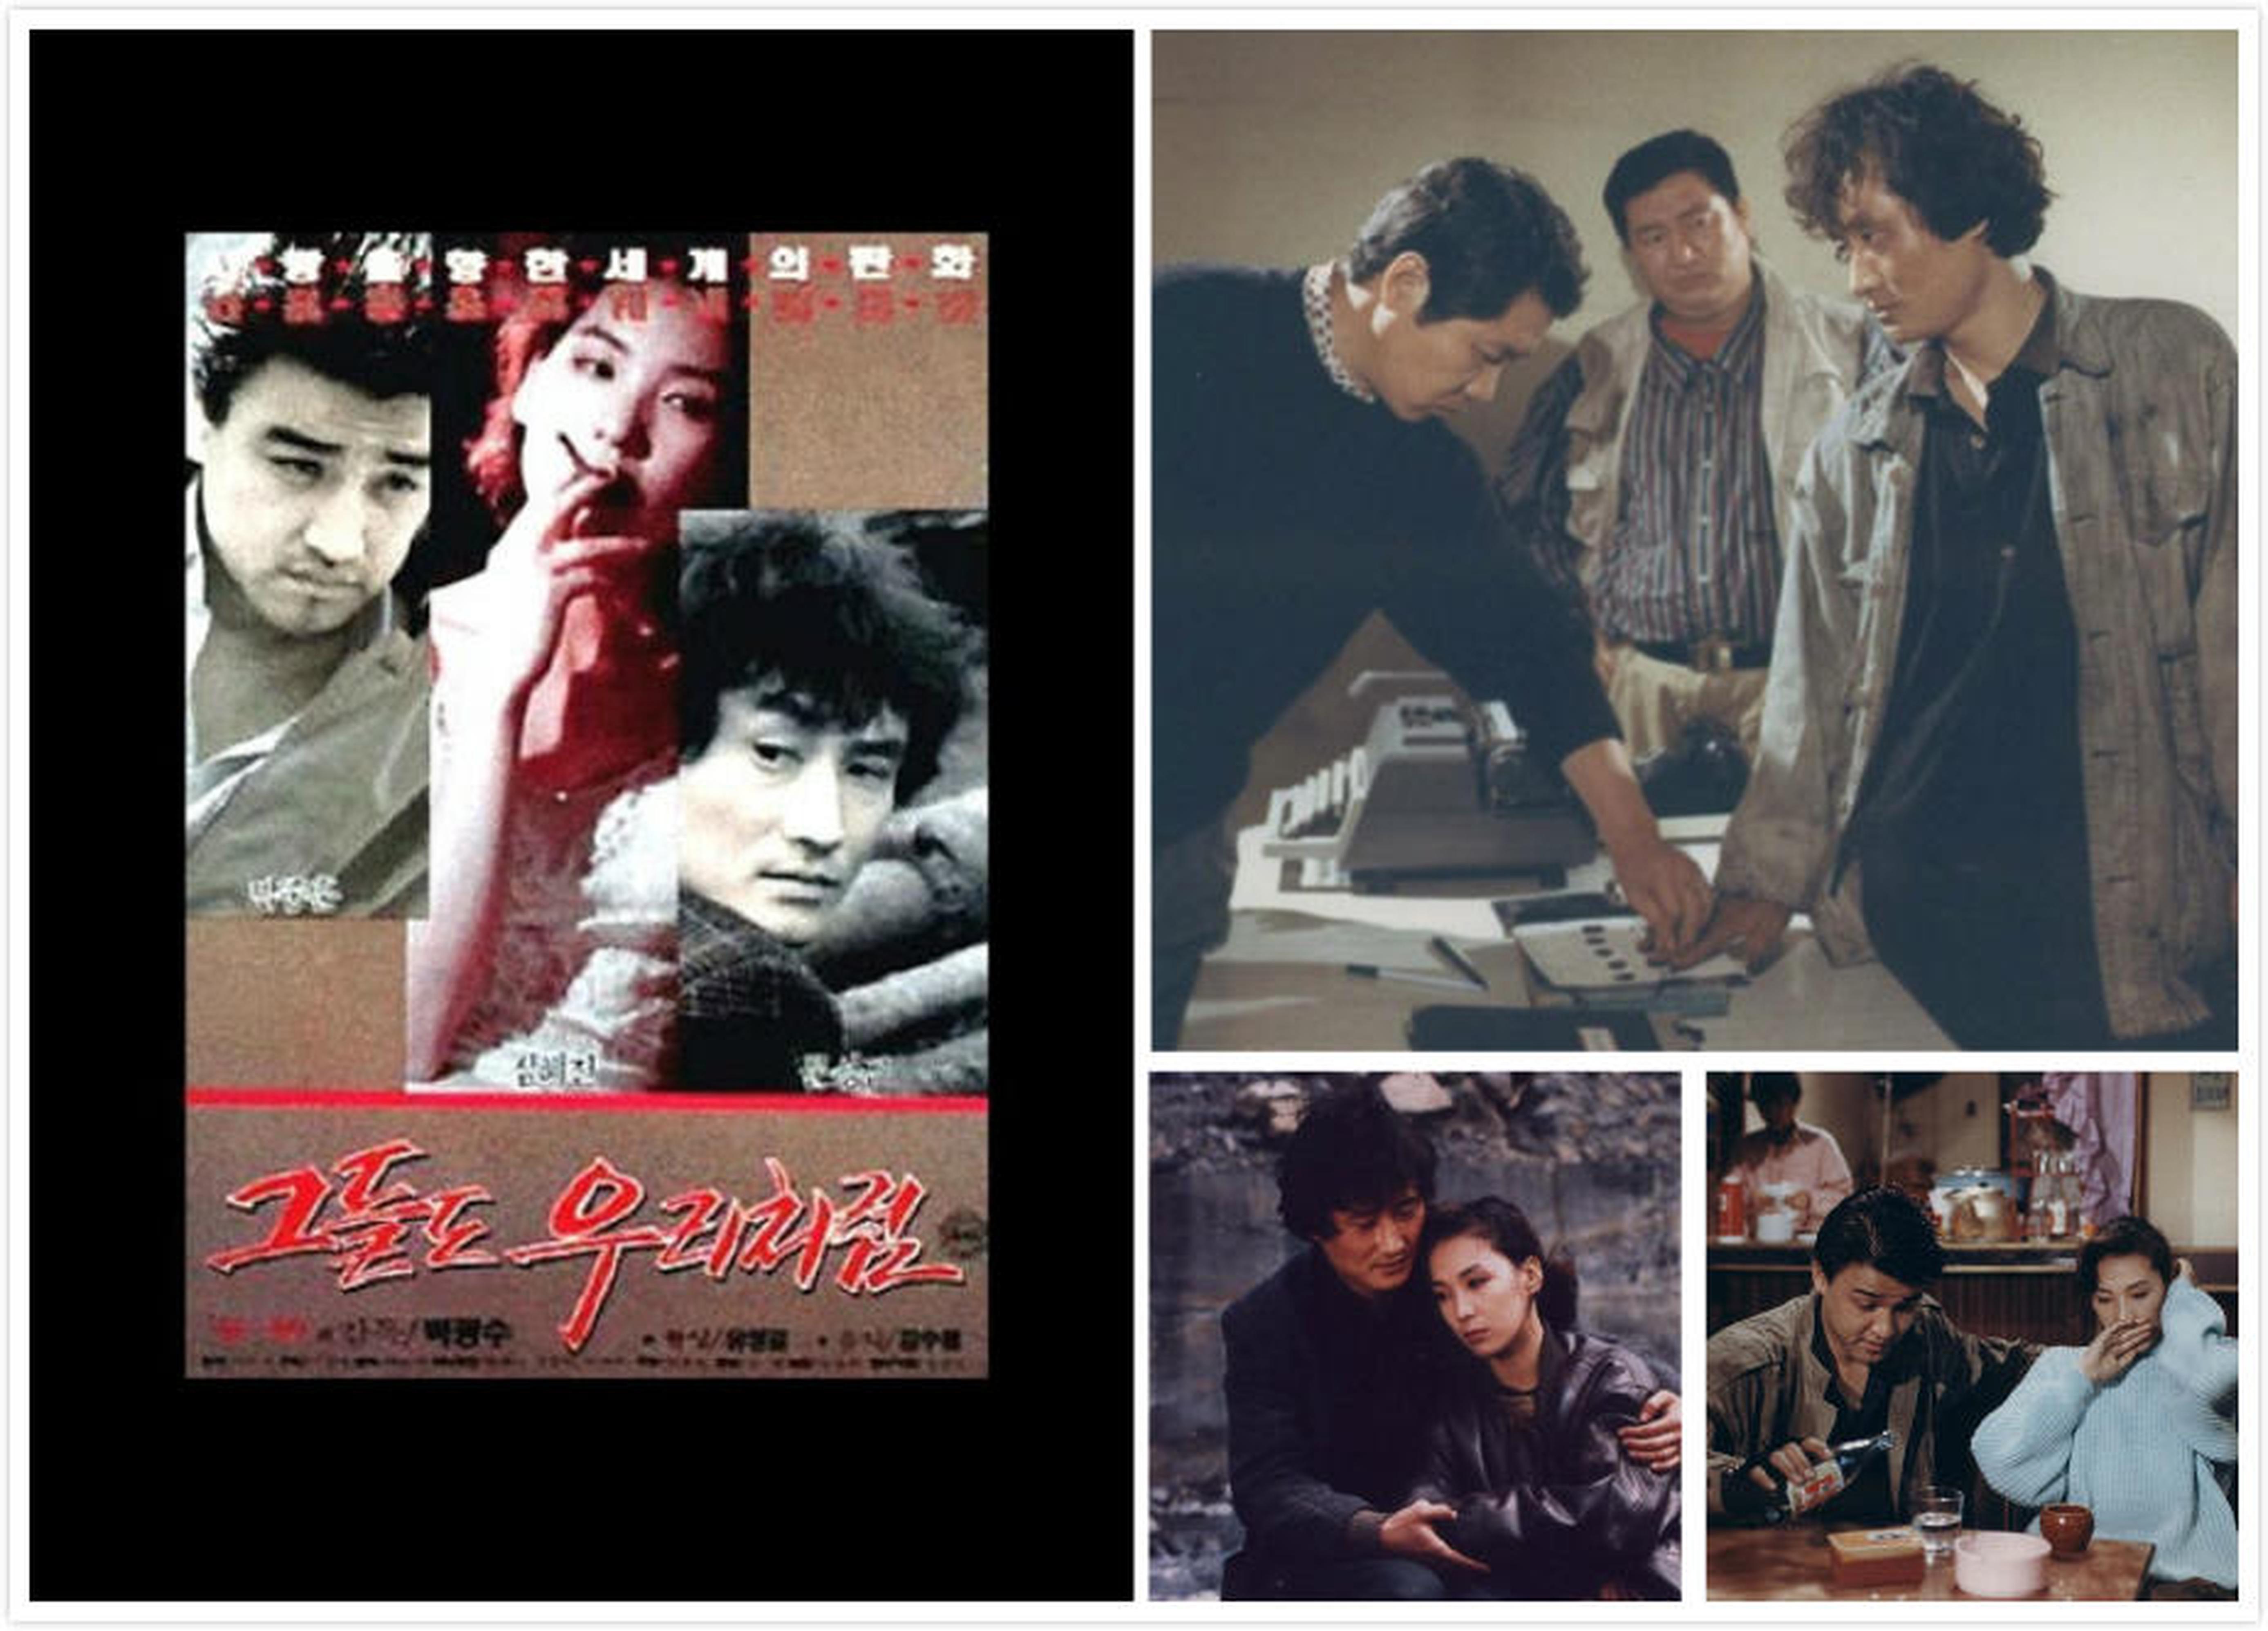 【1990-2000】《他们也和我们一样》(1990)导演朴光洙。青龙奖最佳电影。